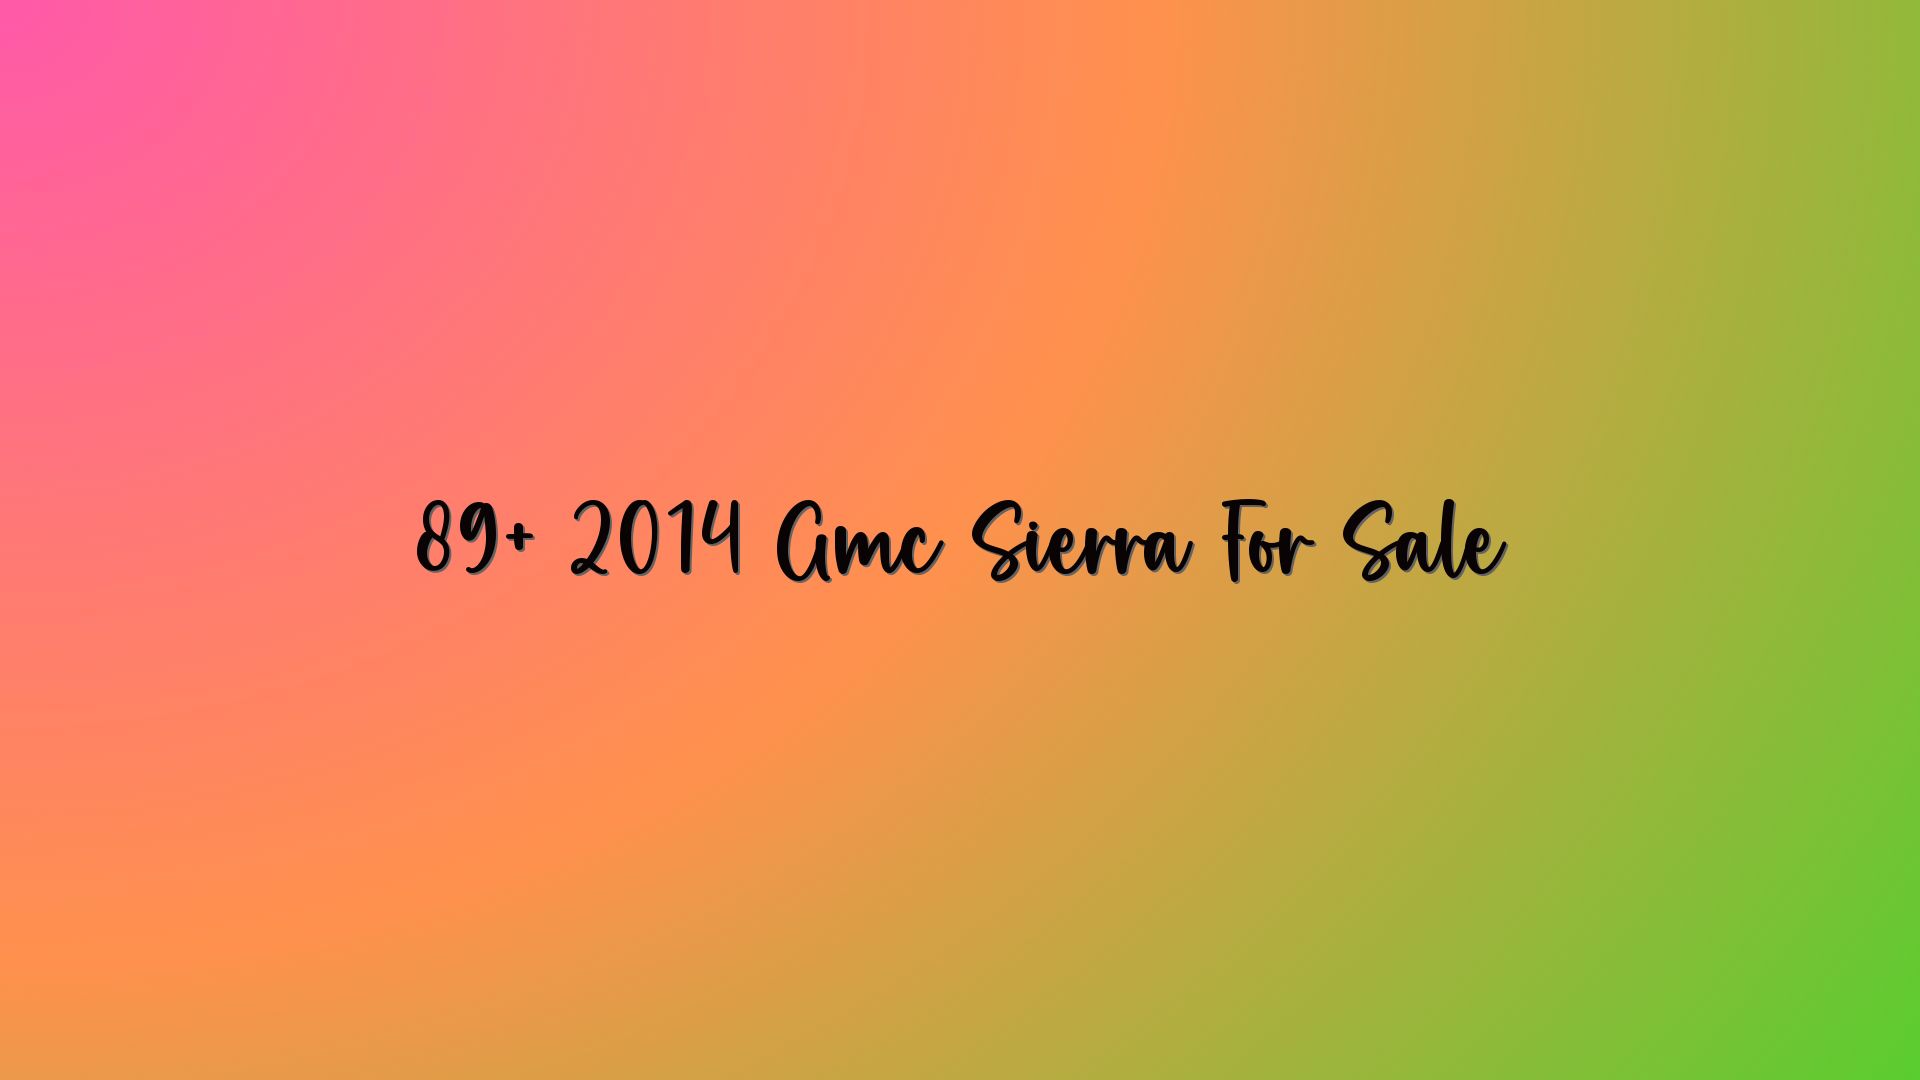 89+ 2014 Gmc Sierra For Sale